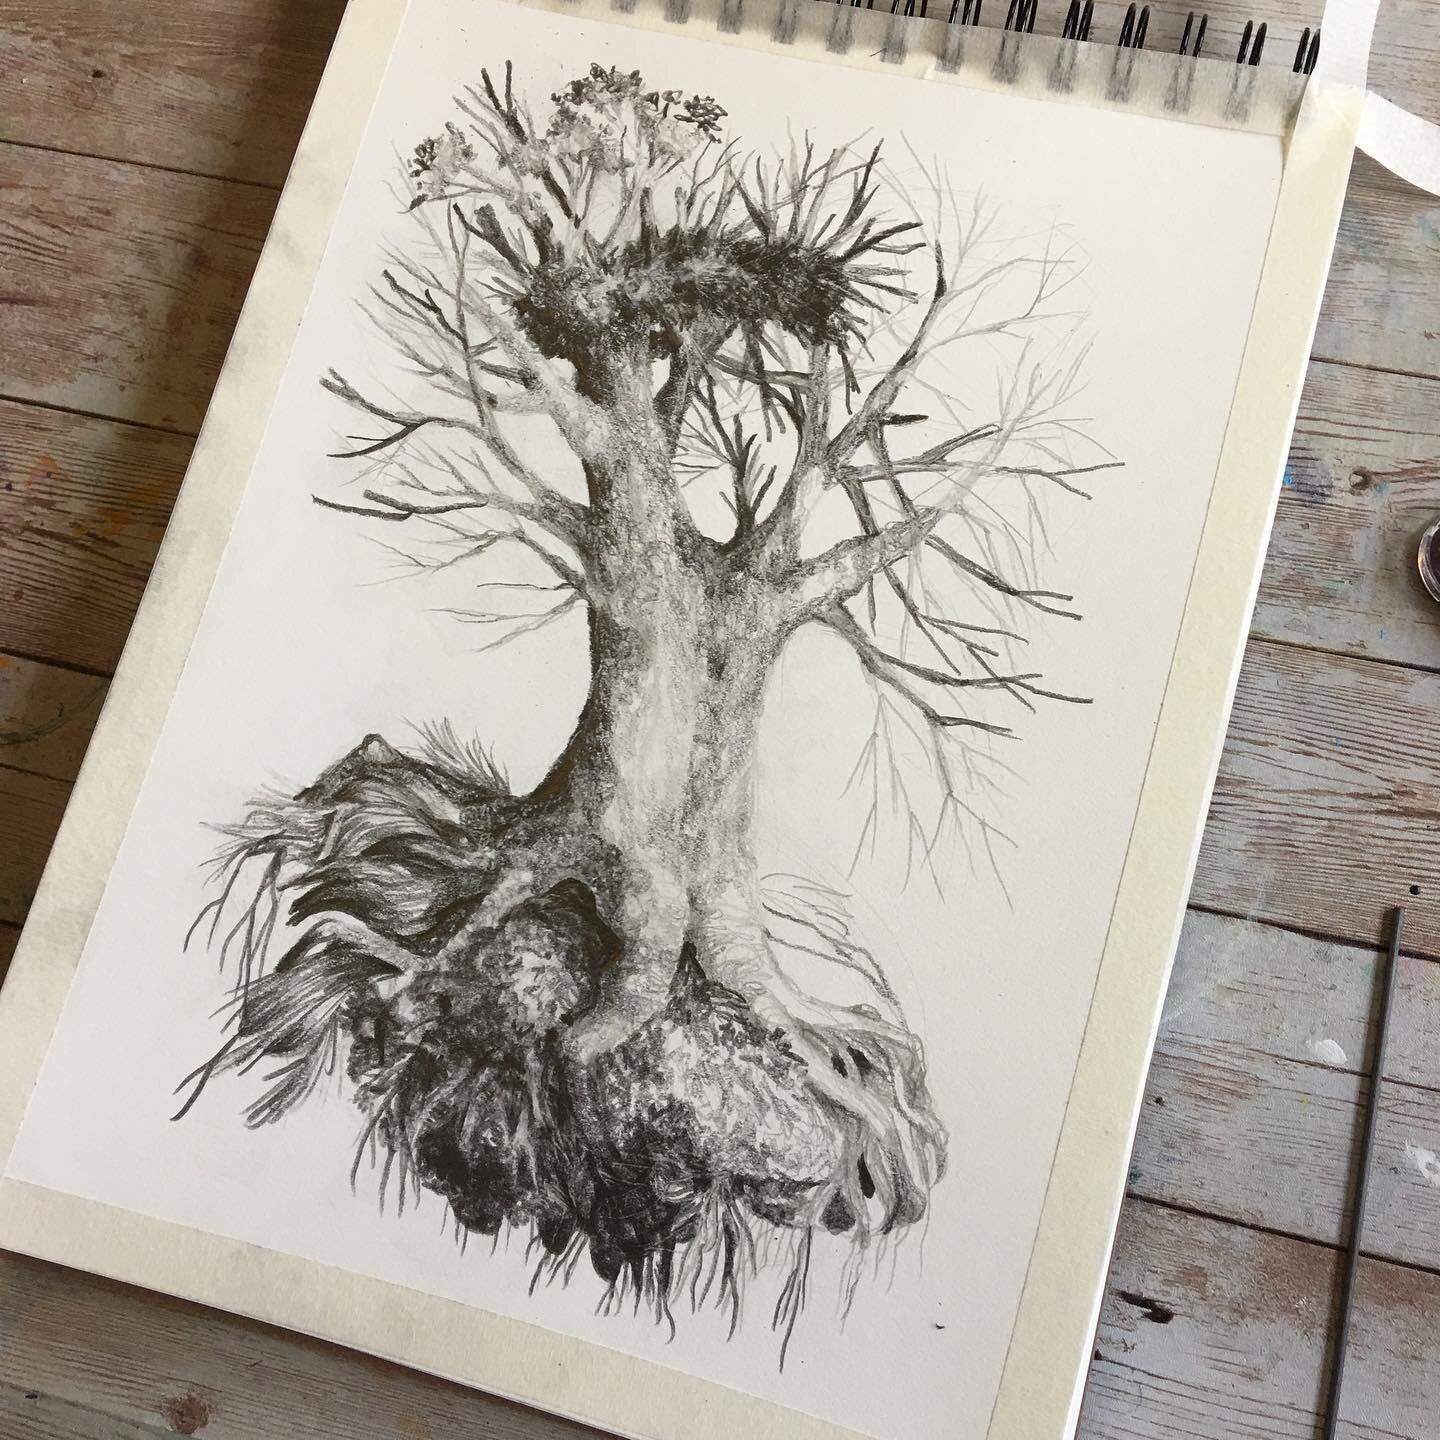 #graphite #trees #treedrawings #treedrawing #sketchbook #pencil #stonehengepaper #sketching #meditativedrawing #artist #landscape #study #blackandwhite